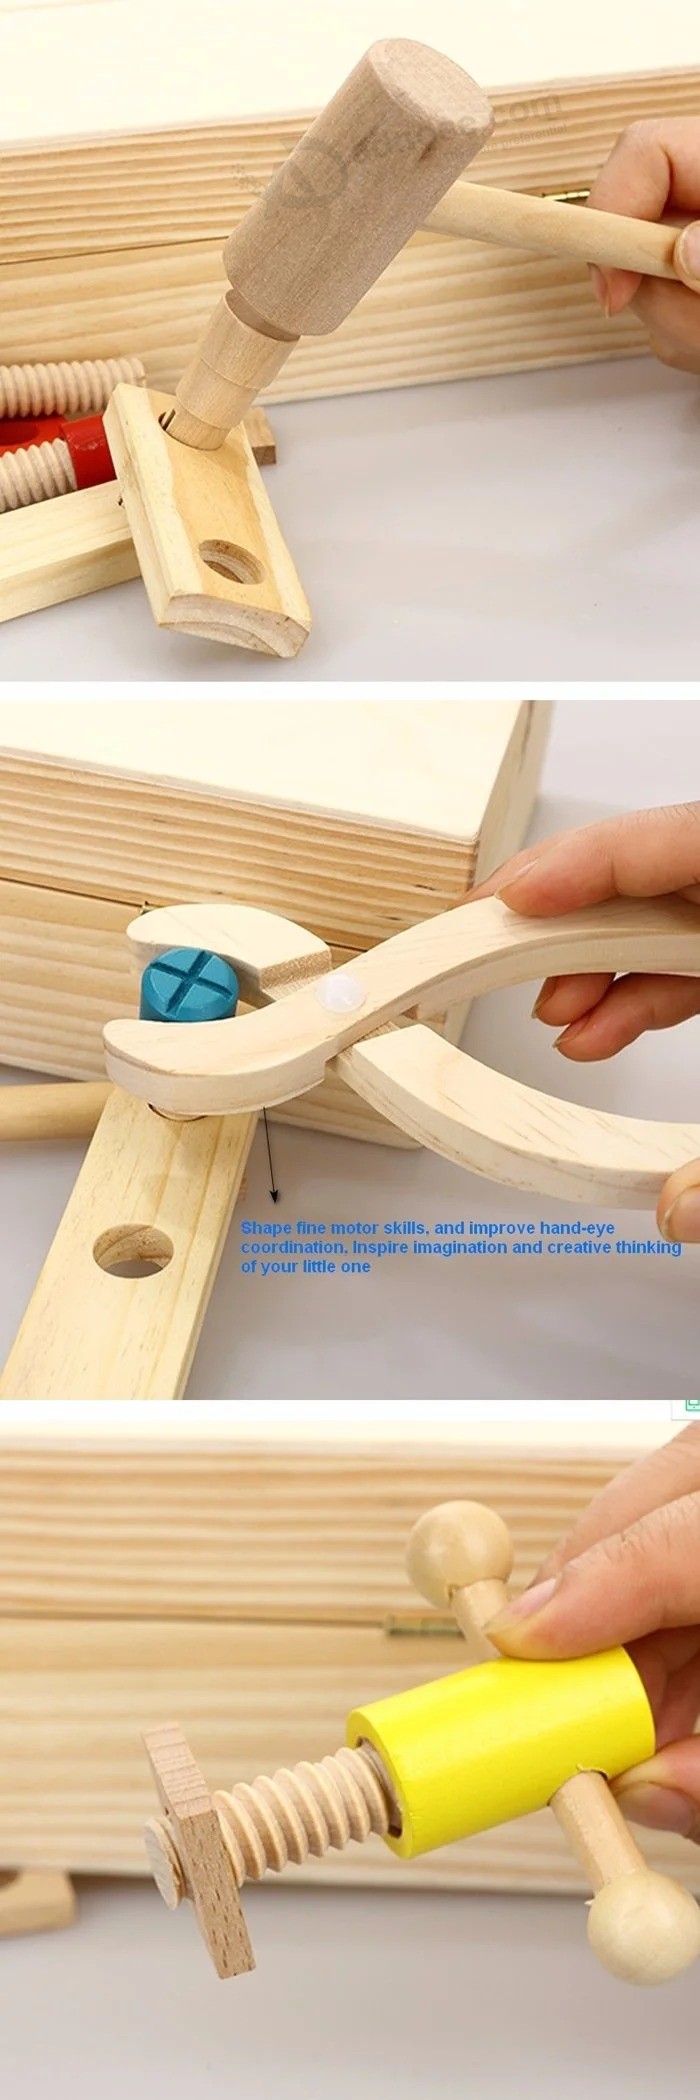 Conjunto educacional de presentes de Natal para crianças do carpinteiro de madeira brinquedos de simulação de madeira (GY-W0088)